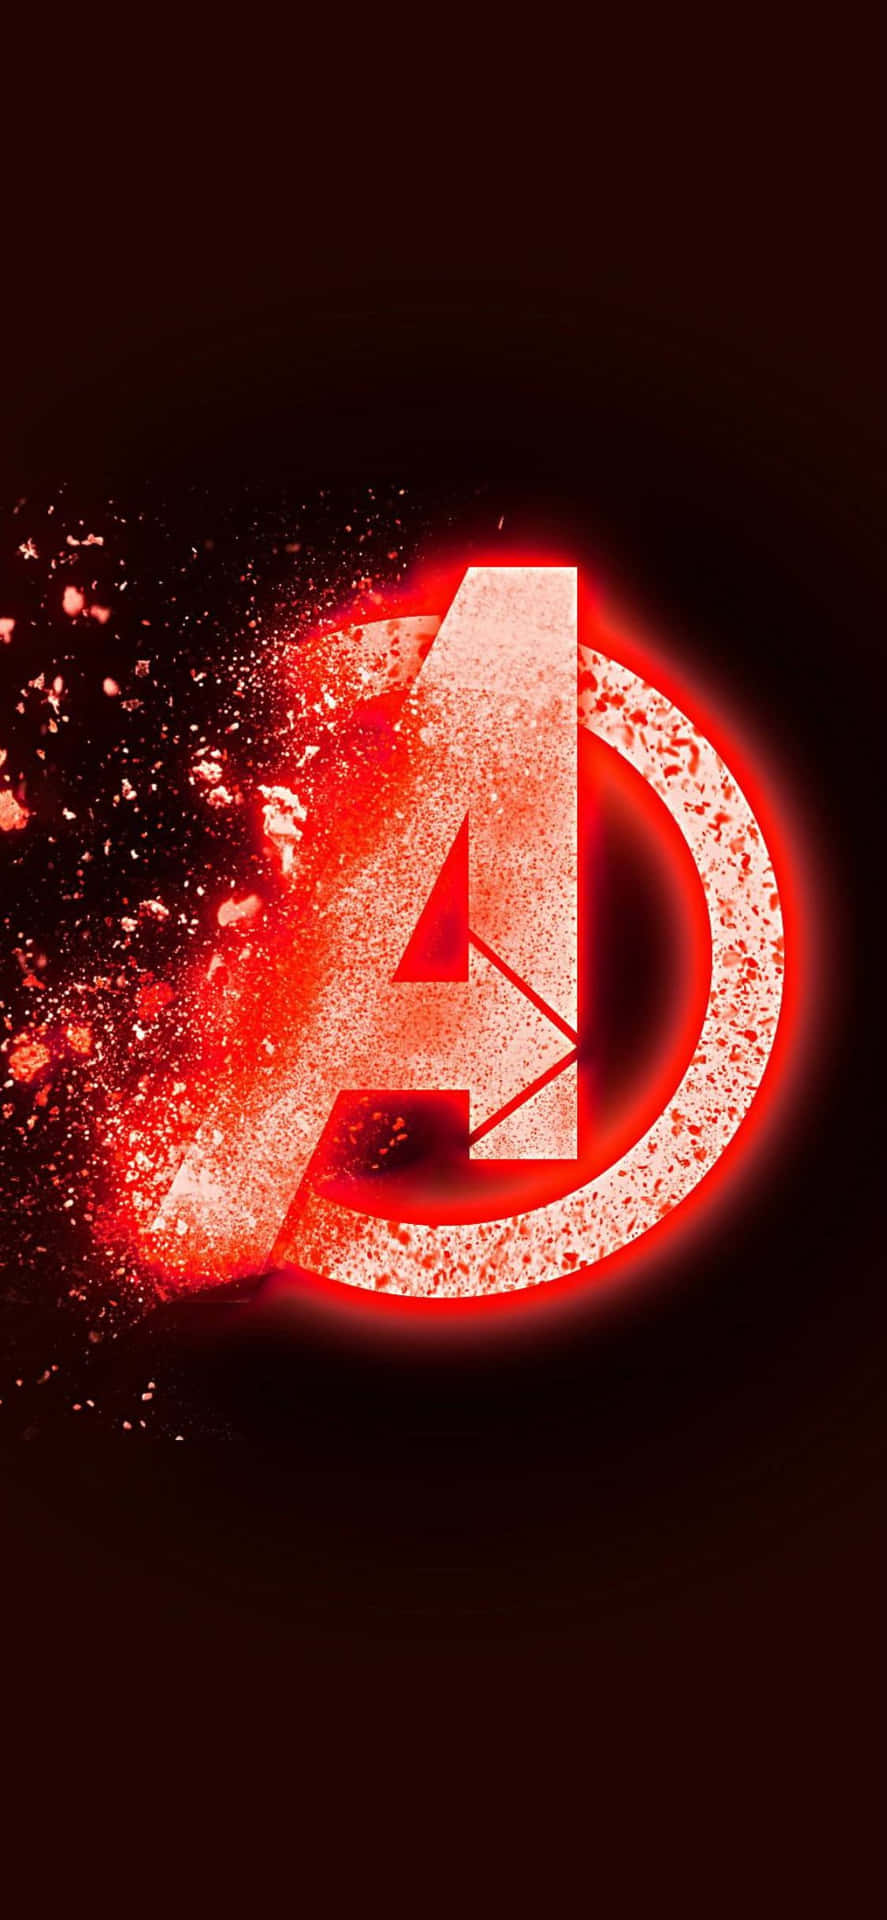 Sfondoper Iphone Xs Con Il Logo Degli Avengers Che Lampeggia